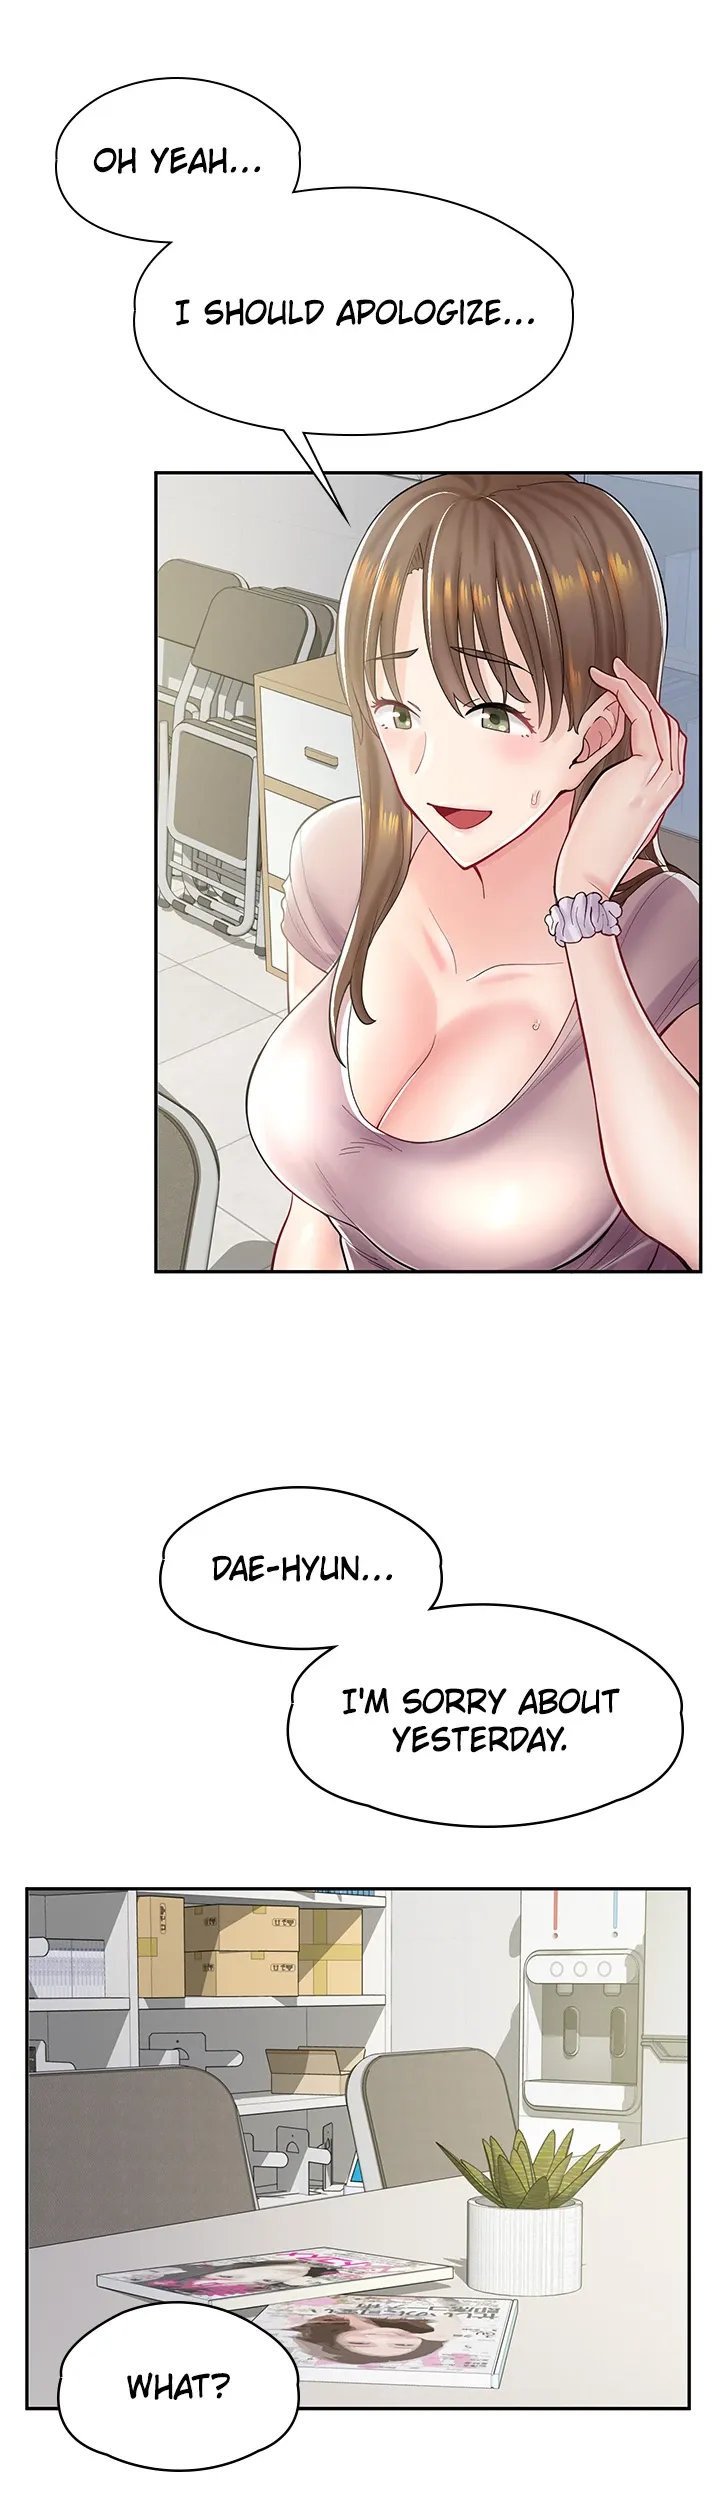 erotic-manga-cafe-girls-chap-6-9